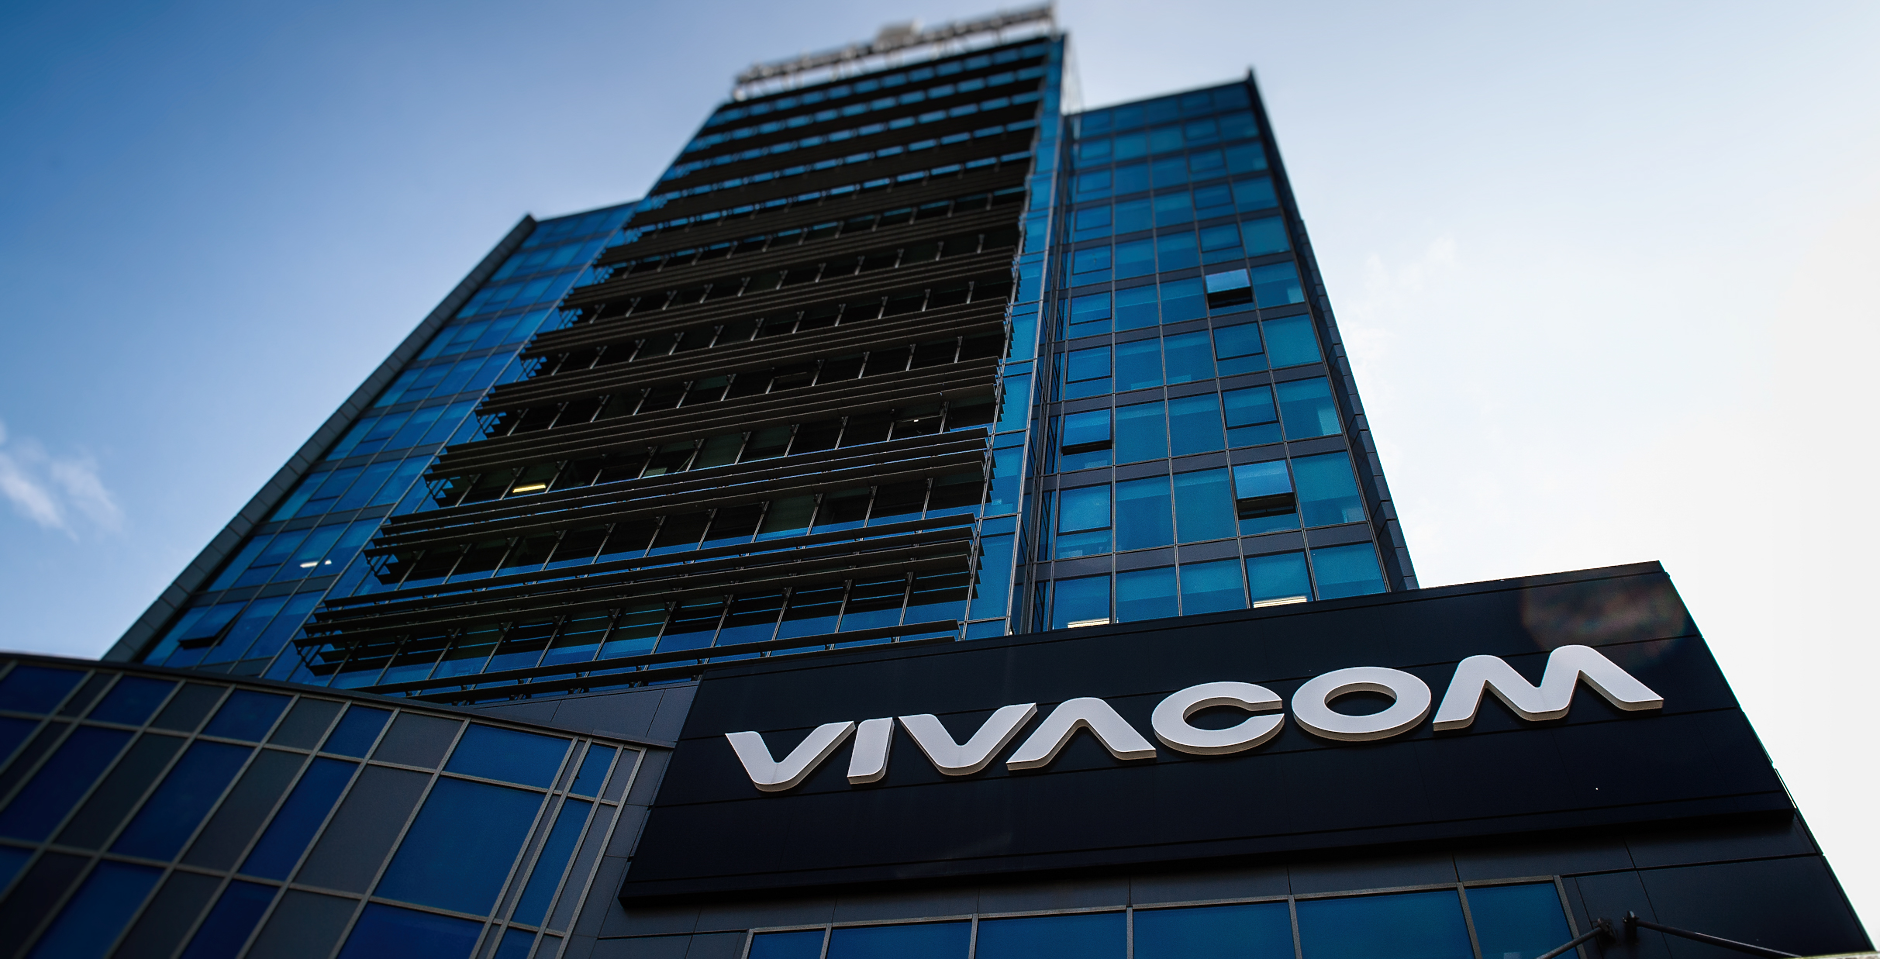 Vivacom приключи придобиването на Телнет